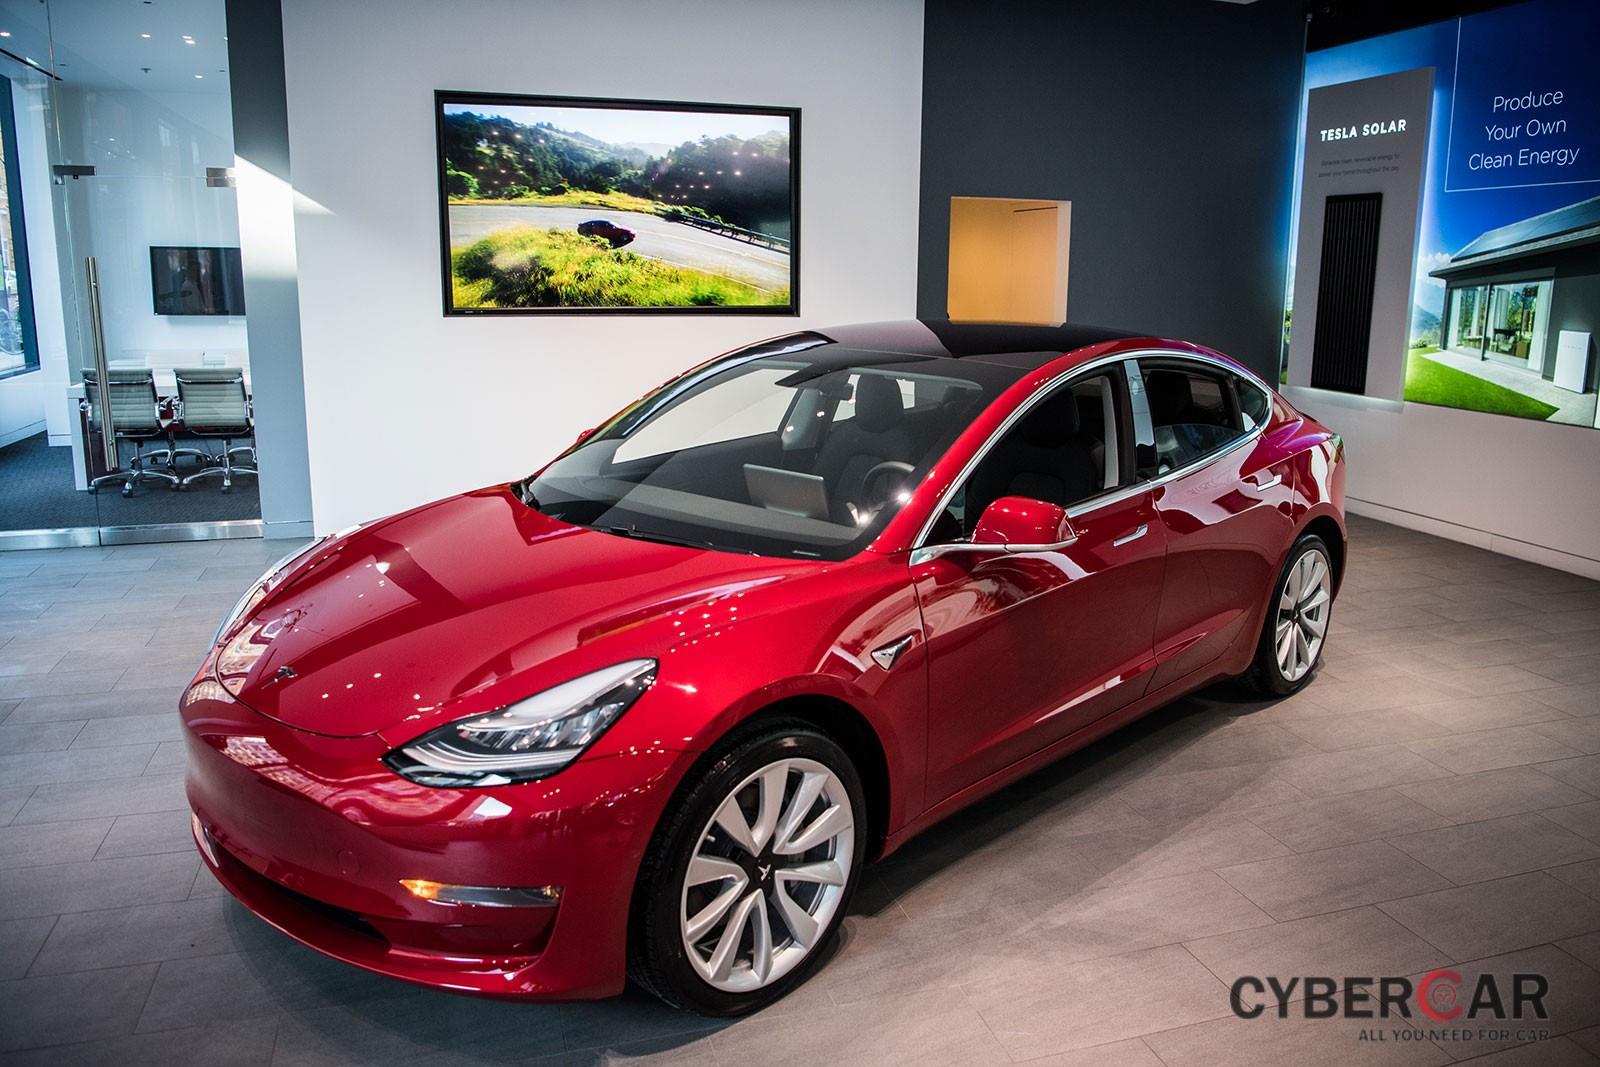 Điểm số chung của Tesla bị kéo tụt vì Model 3